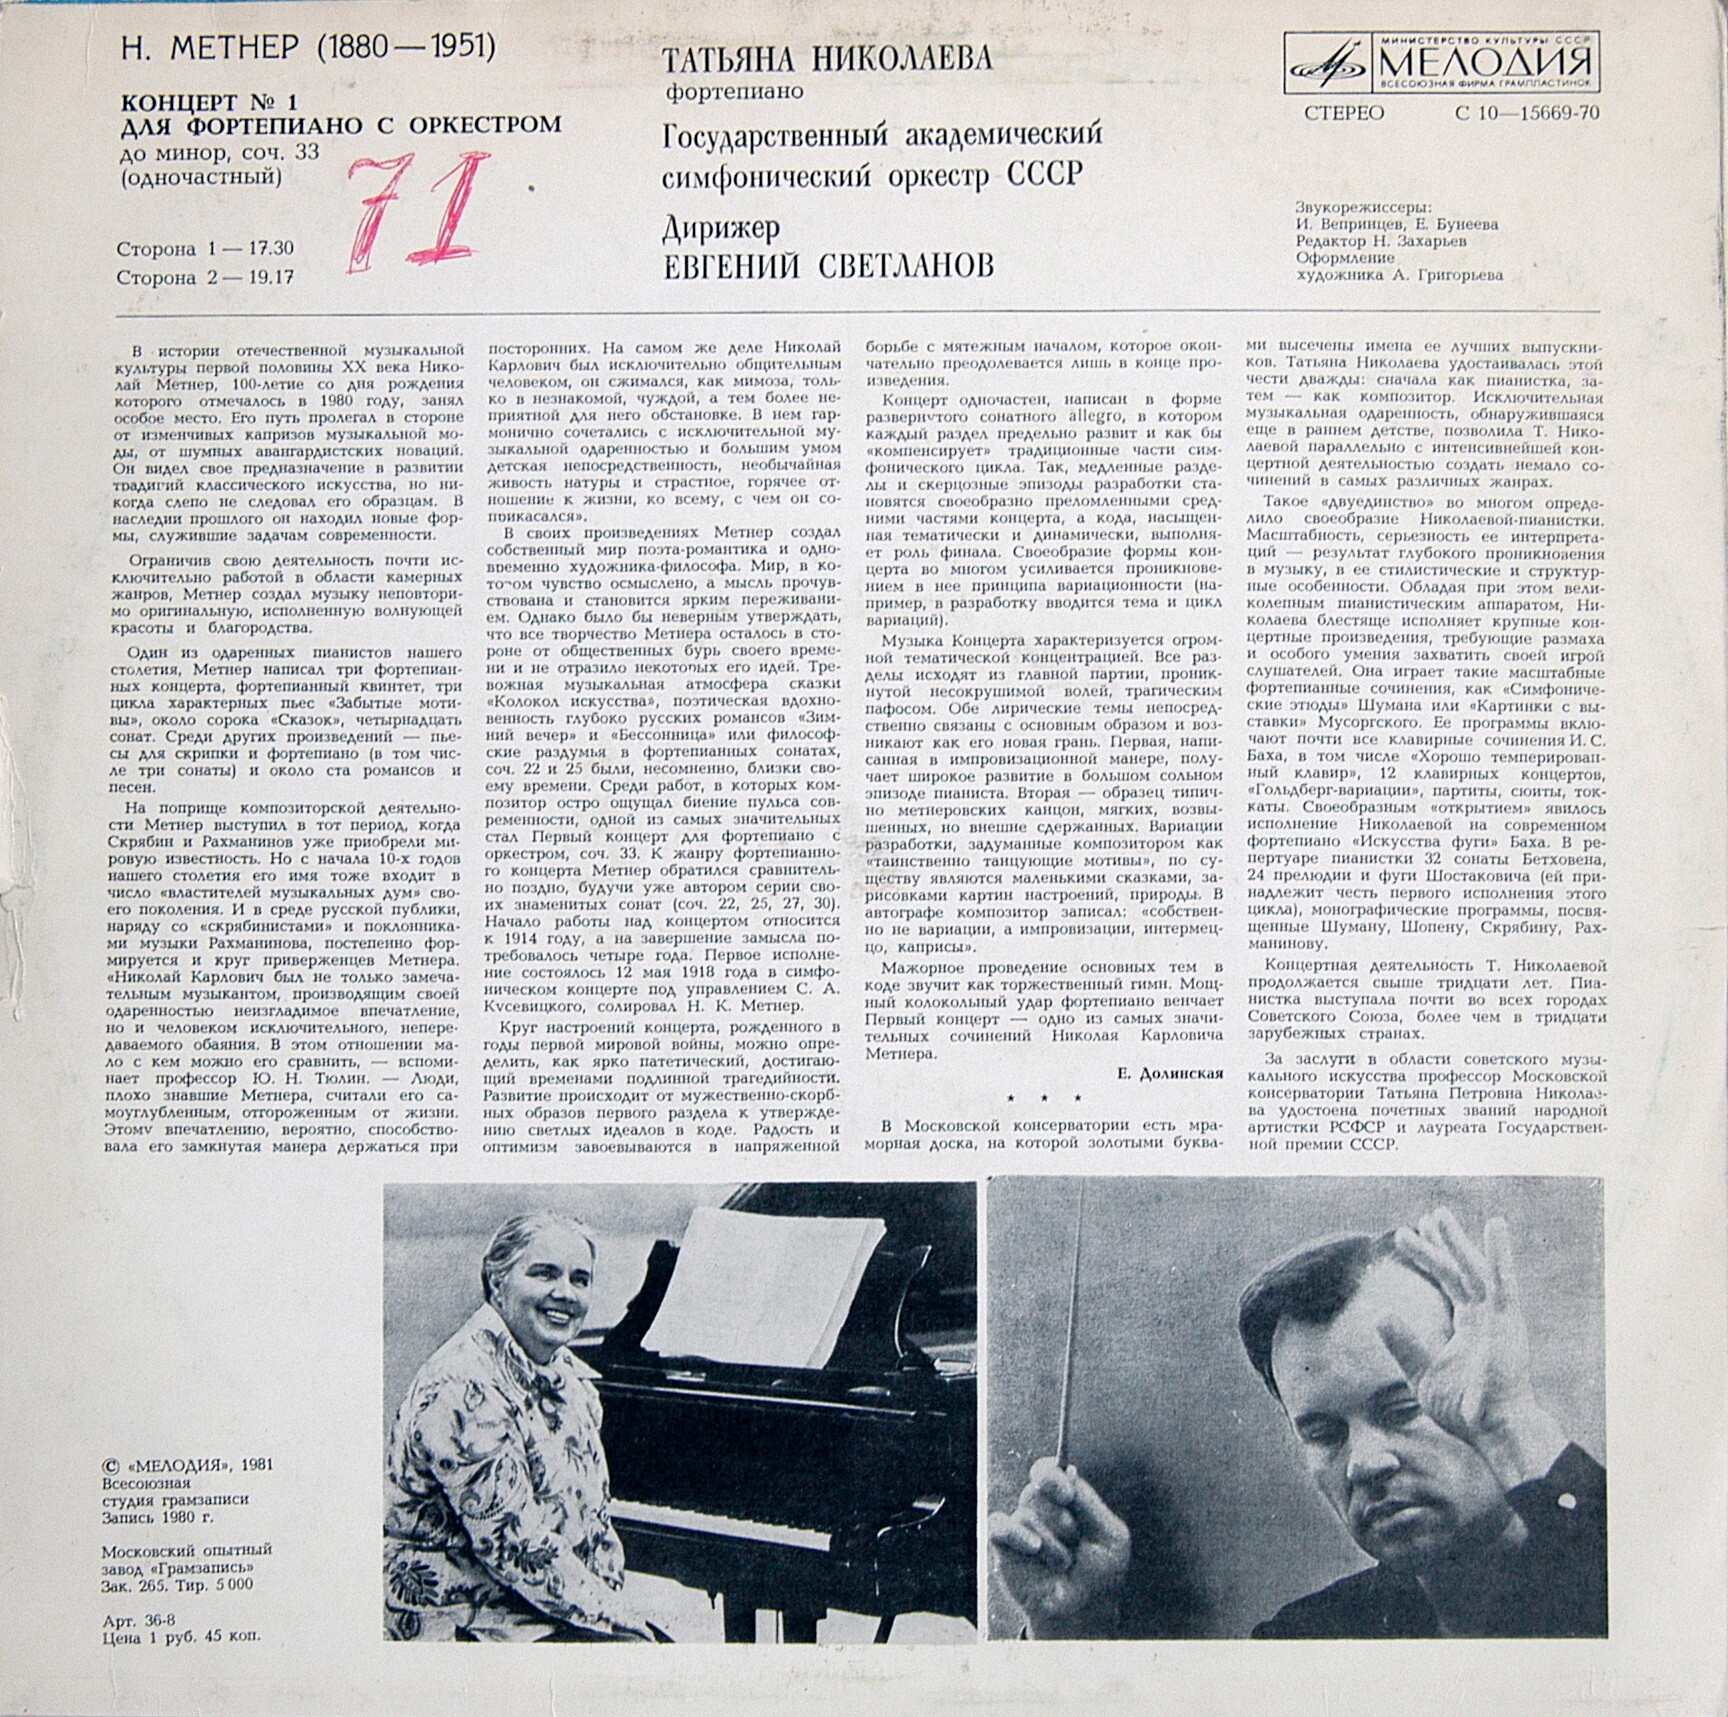 Н. МЕТНЕР (1880-1951): Концерт № 1 для ф-но с оркестром до минор, соч. 33. (Т. Николаева, Е. Светланов)